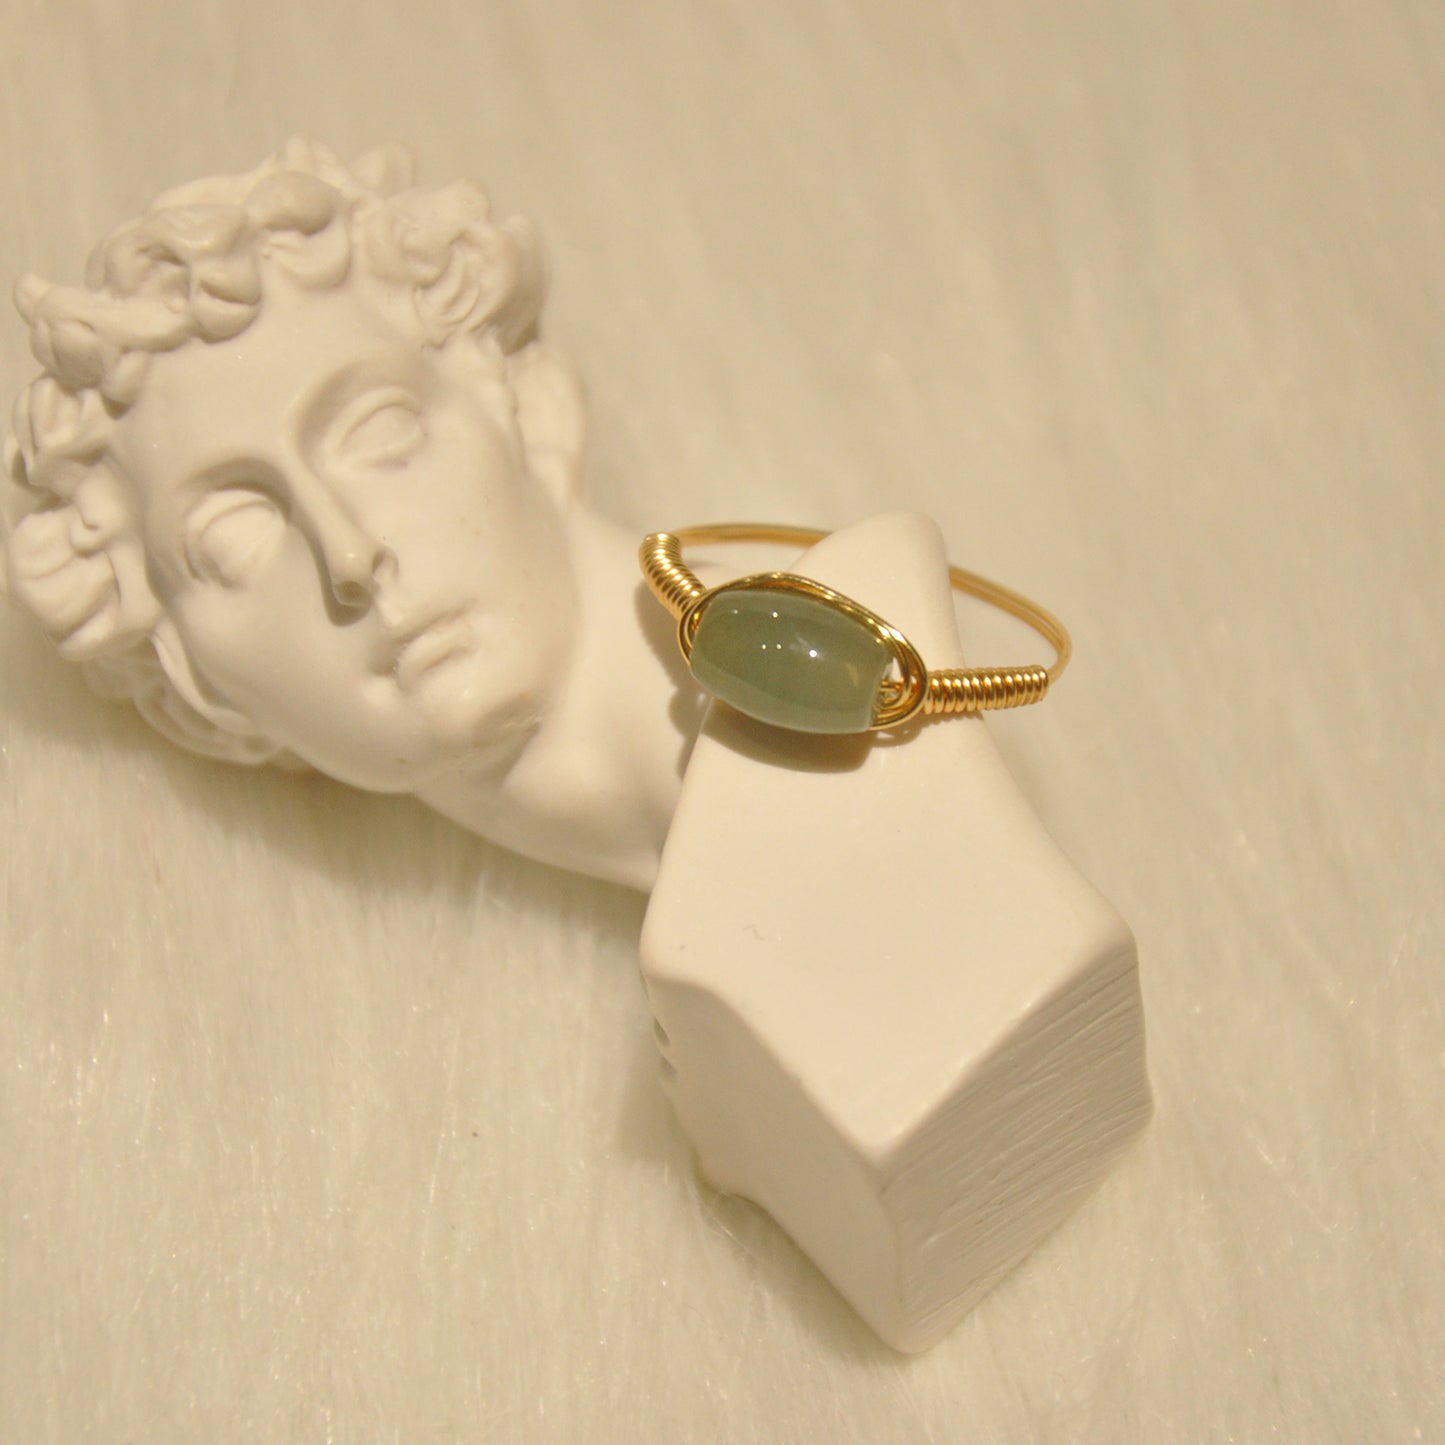 Natural jade ring